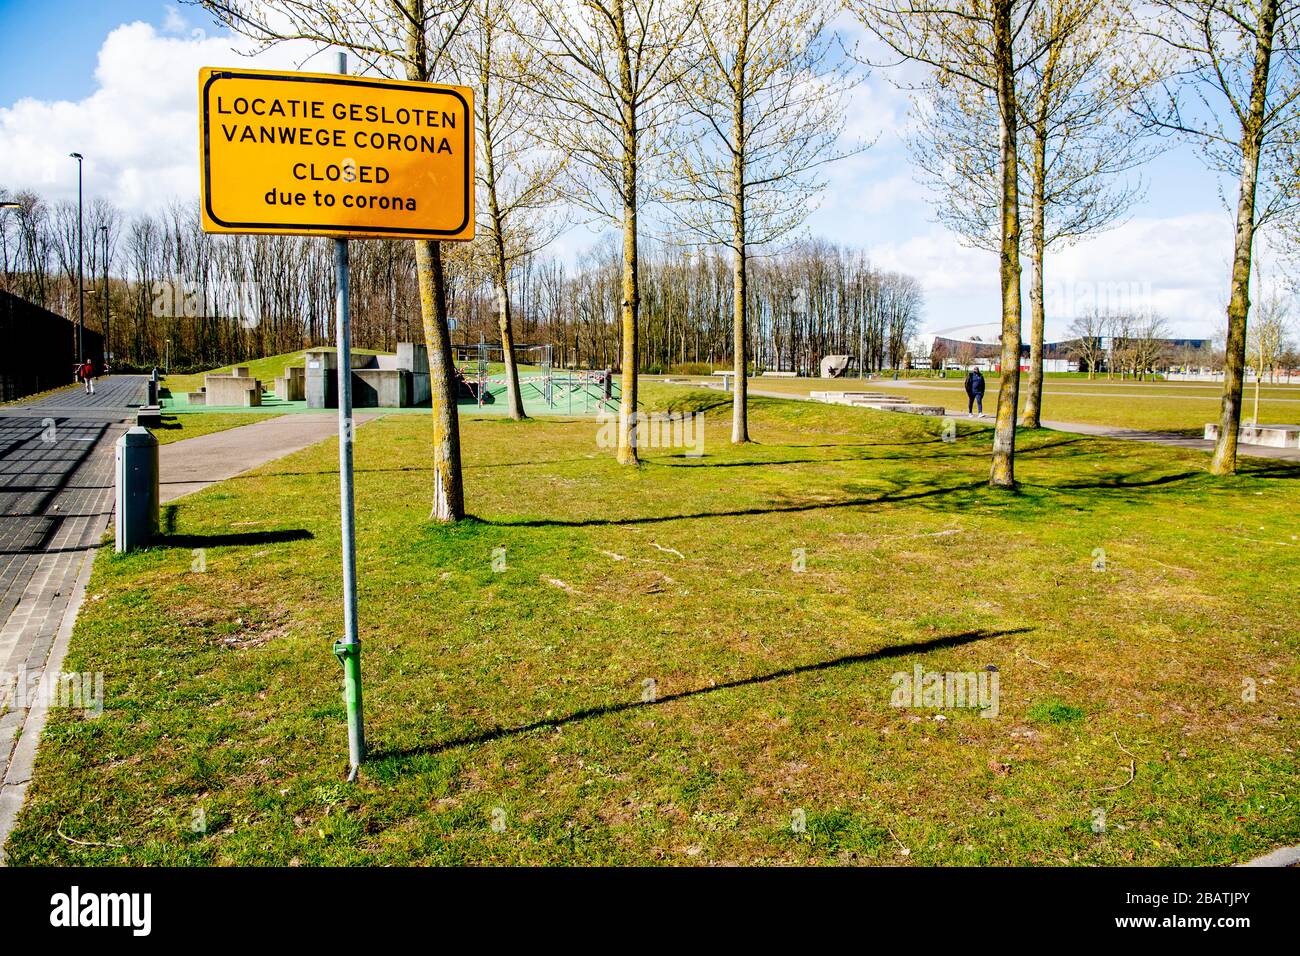 Cartelli chiusi visti nei parchi e nei parchi di Rotterdam a causa del virus della corona. Parchi e parchi sono stati chiusi come misura preventiva contro la pandemia di Covid-19. Foto Stock